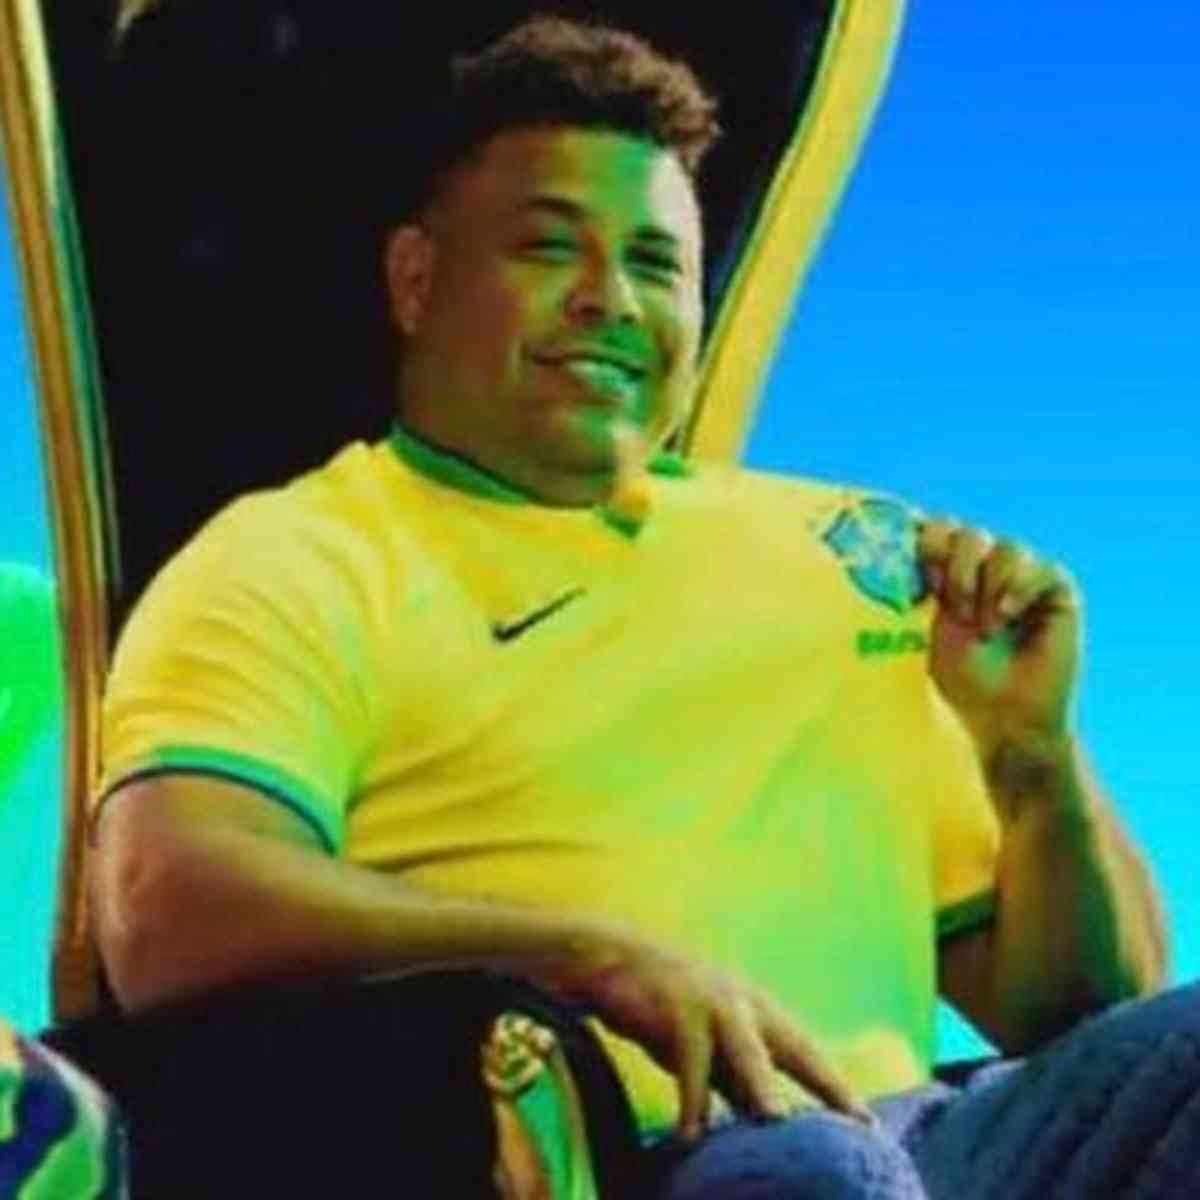 América lança camisa amarela em homenagem à Seleção Brasileira; fotos -  Superesportes